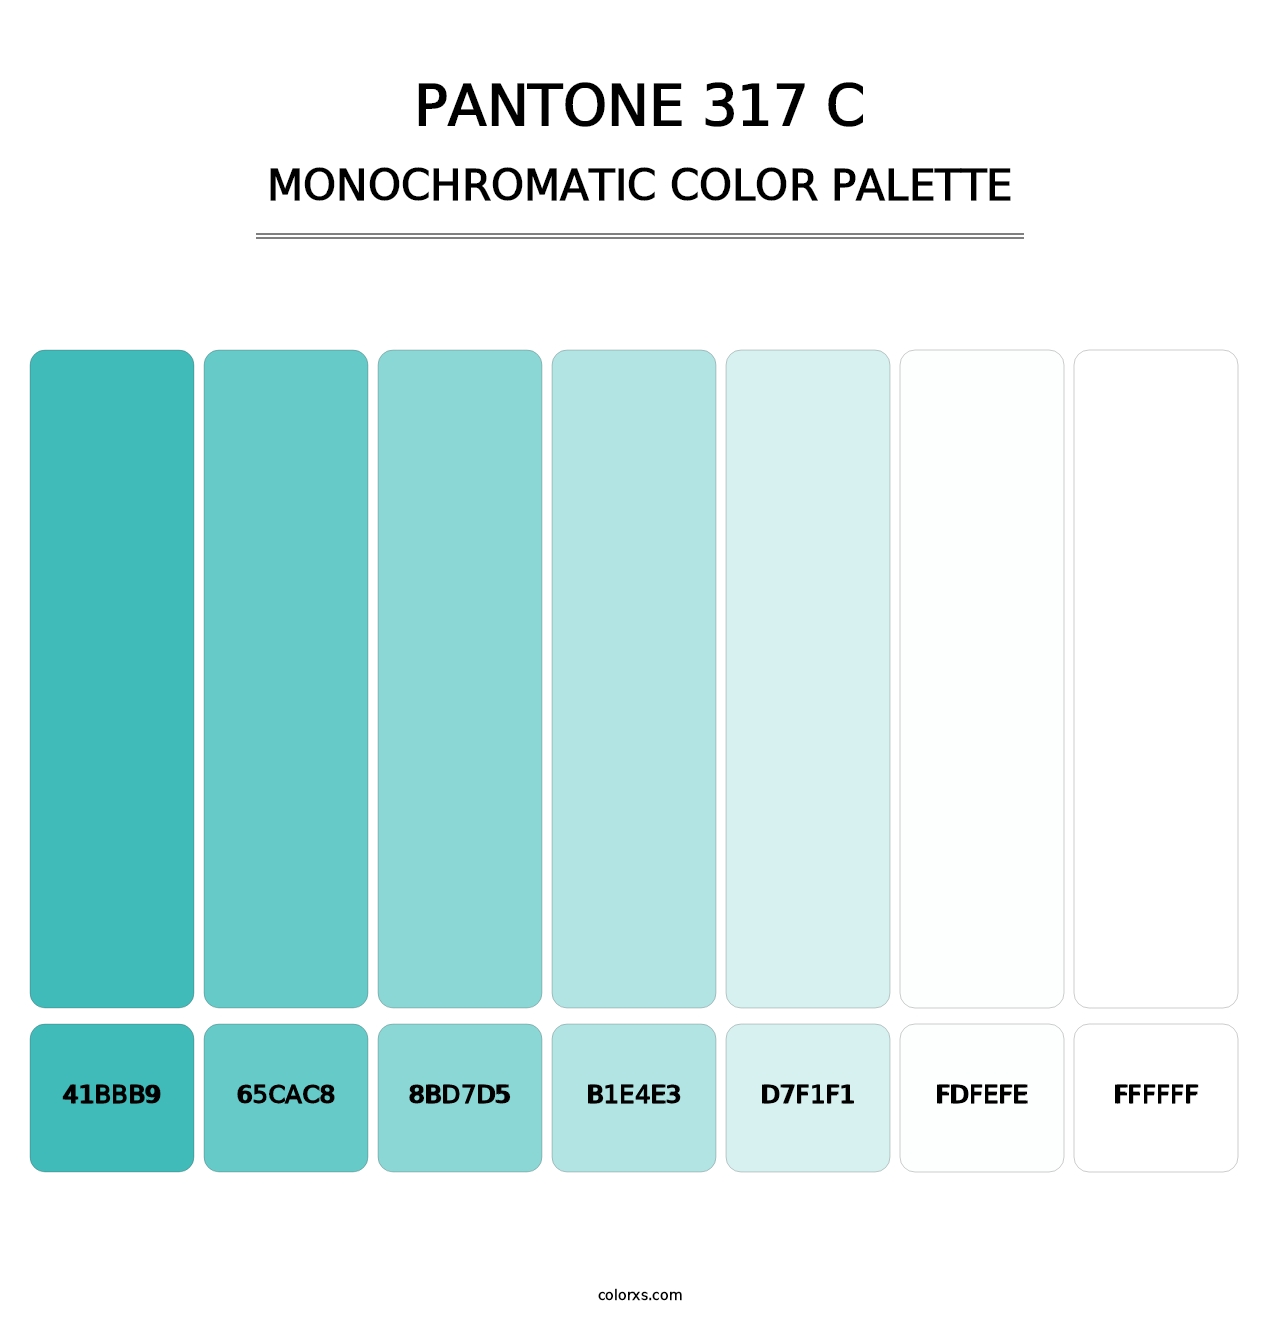 PANTONE 317 C - Monochromatic Color Palette